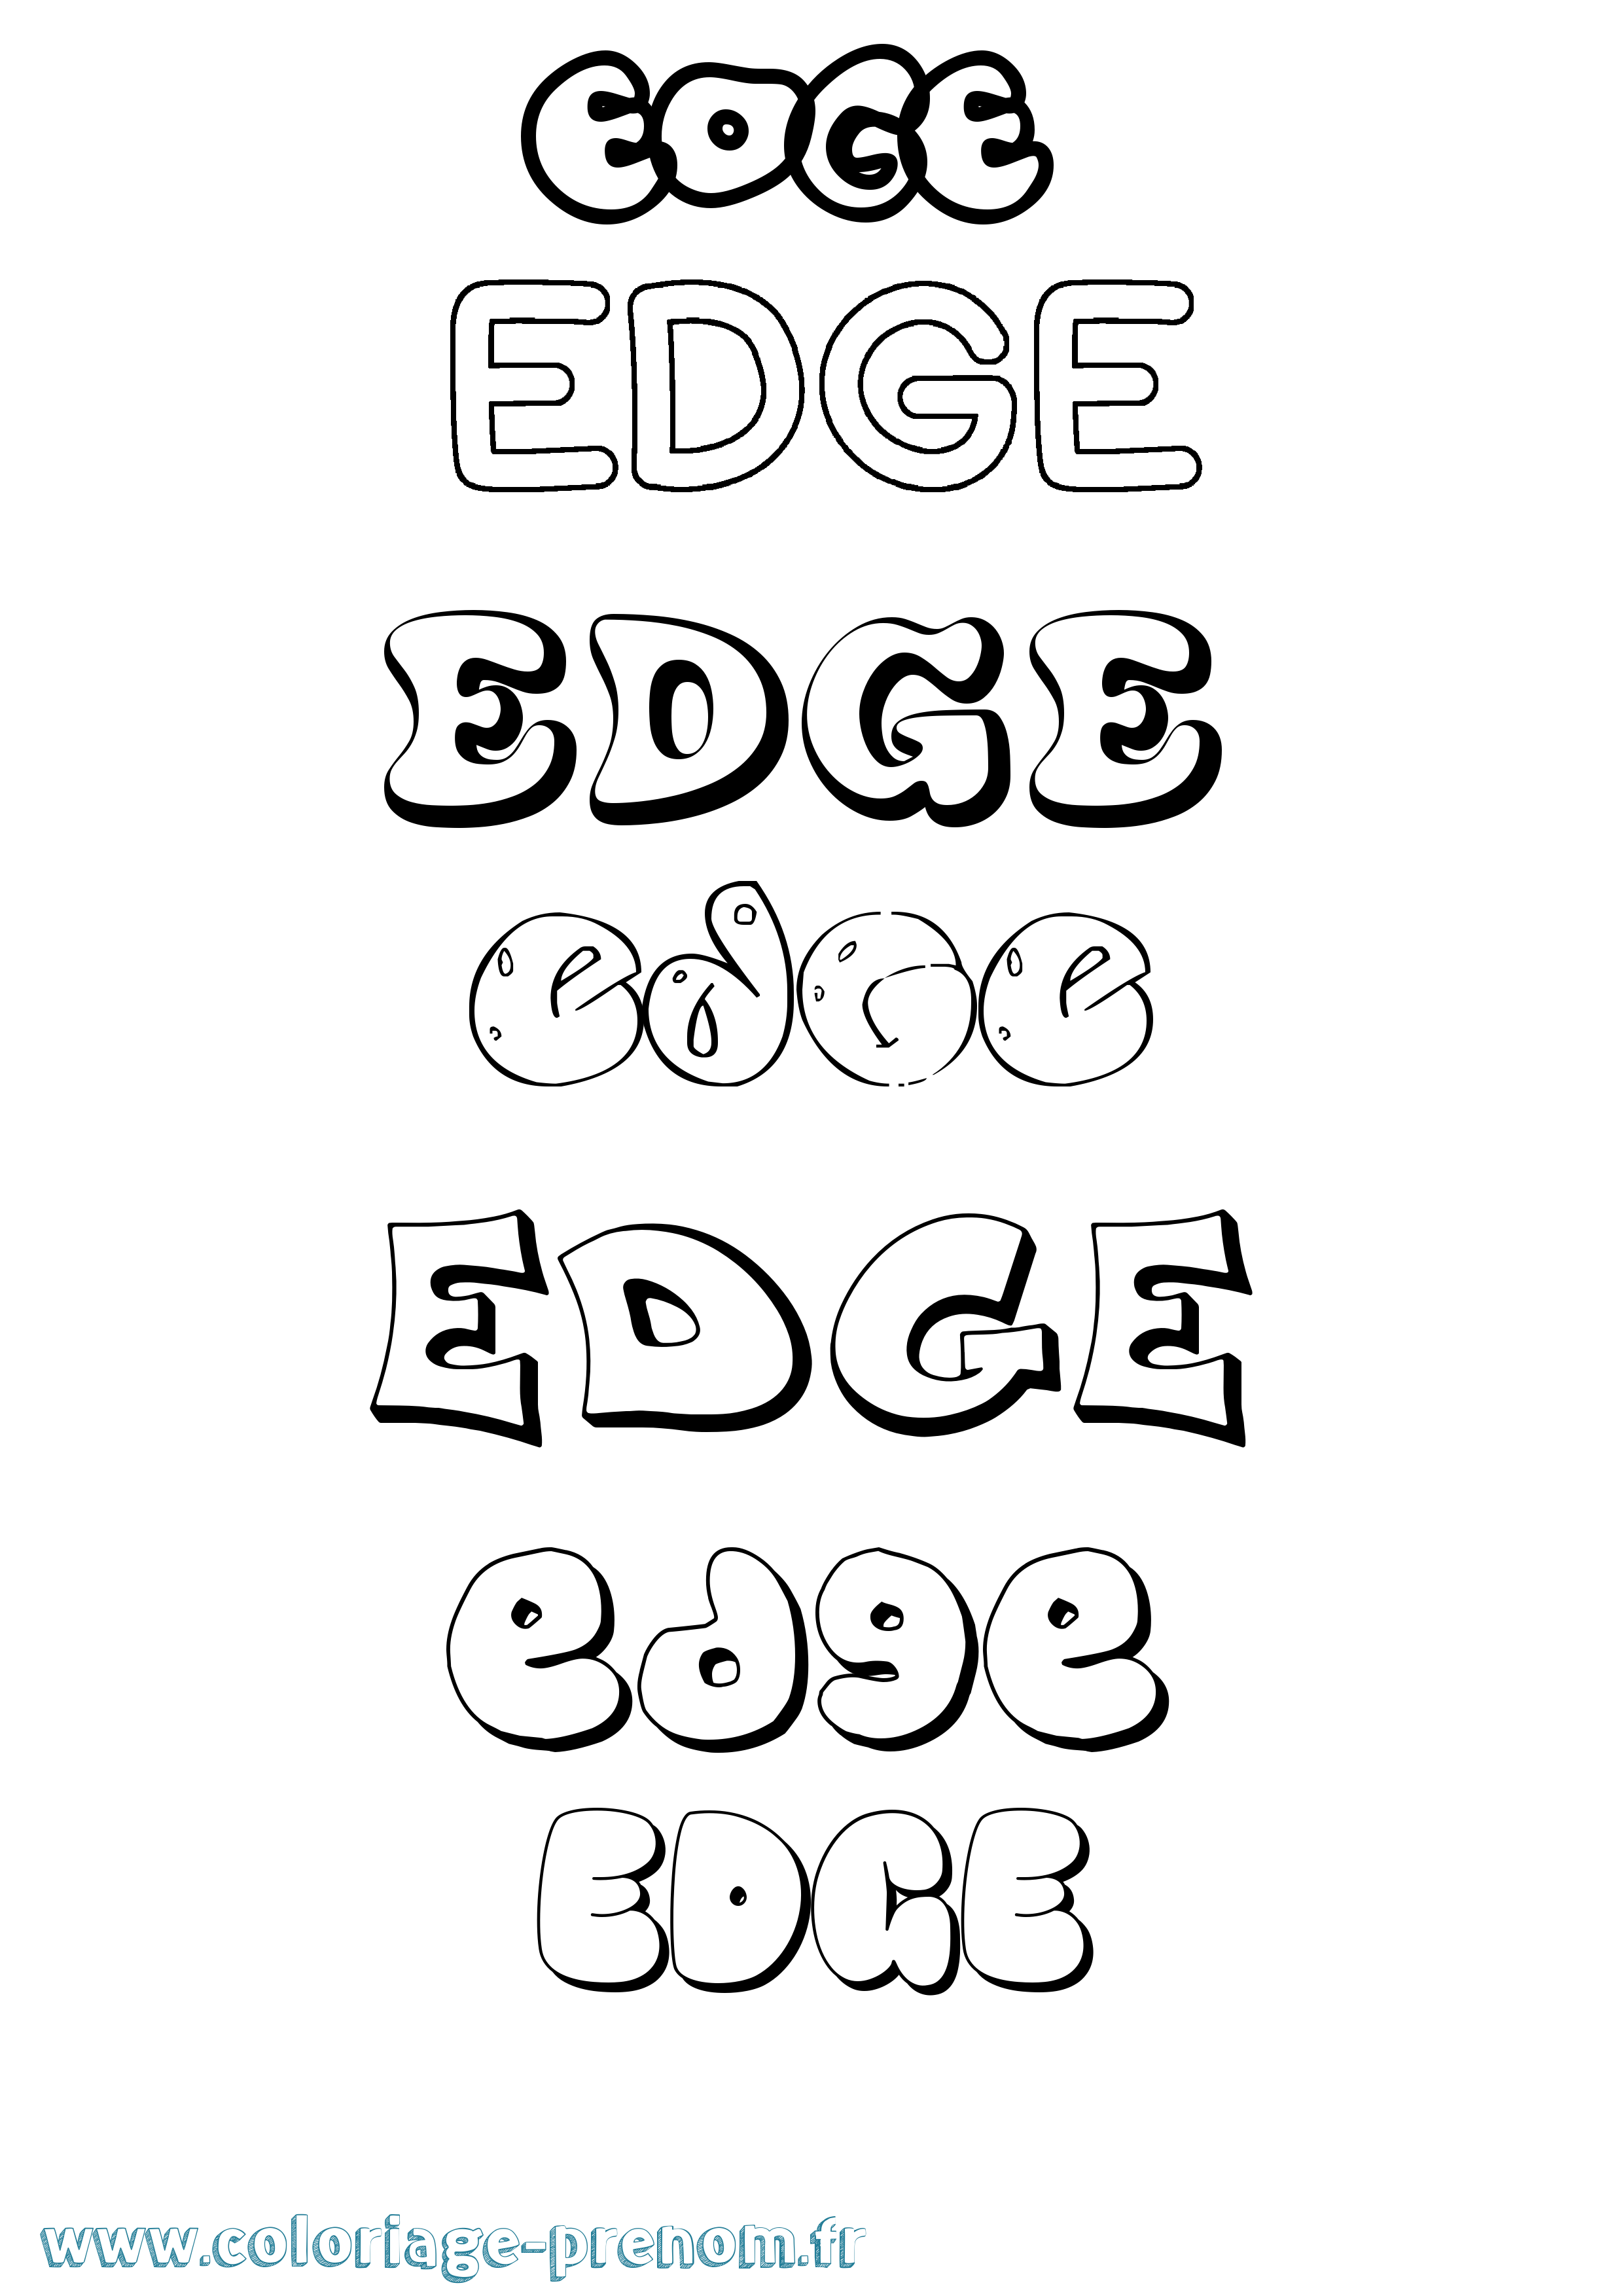 Coloriage prénom Edge Bubble